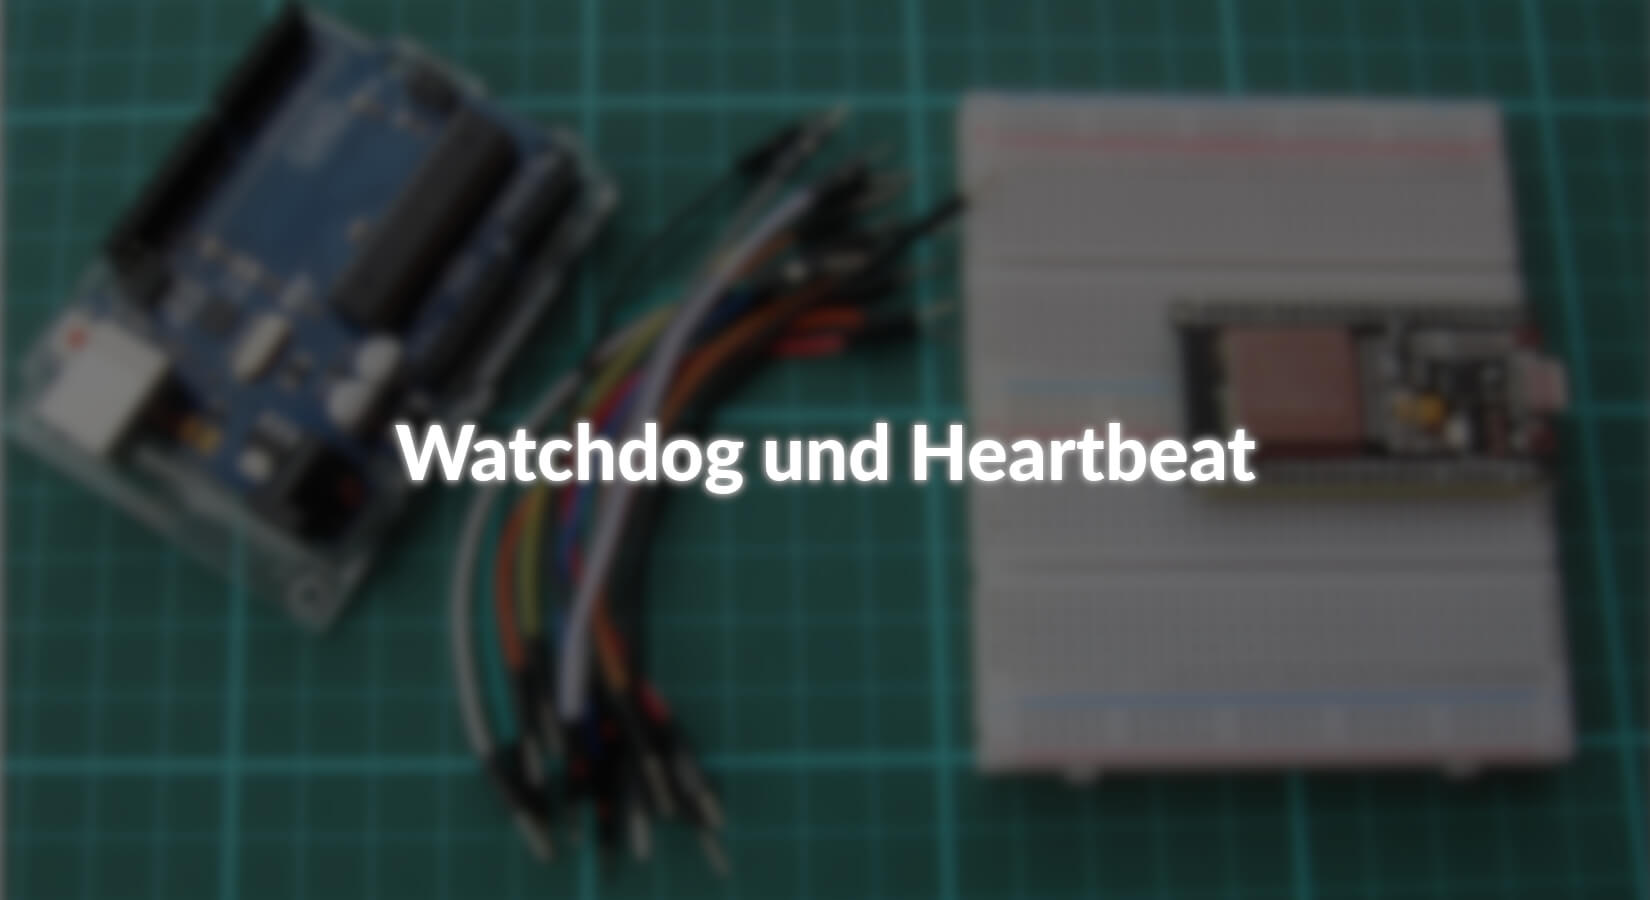 Watchdog und Heartbeat - AZ-Delivery